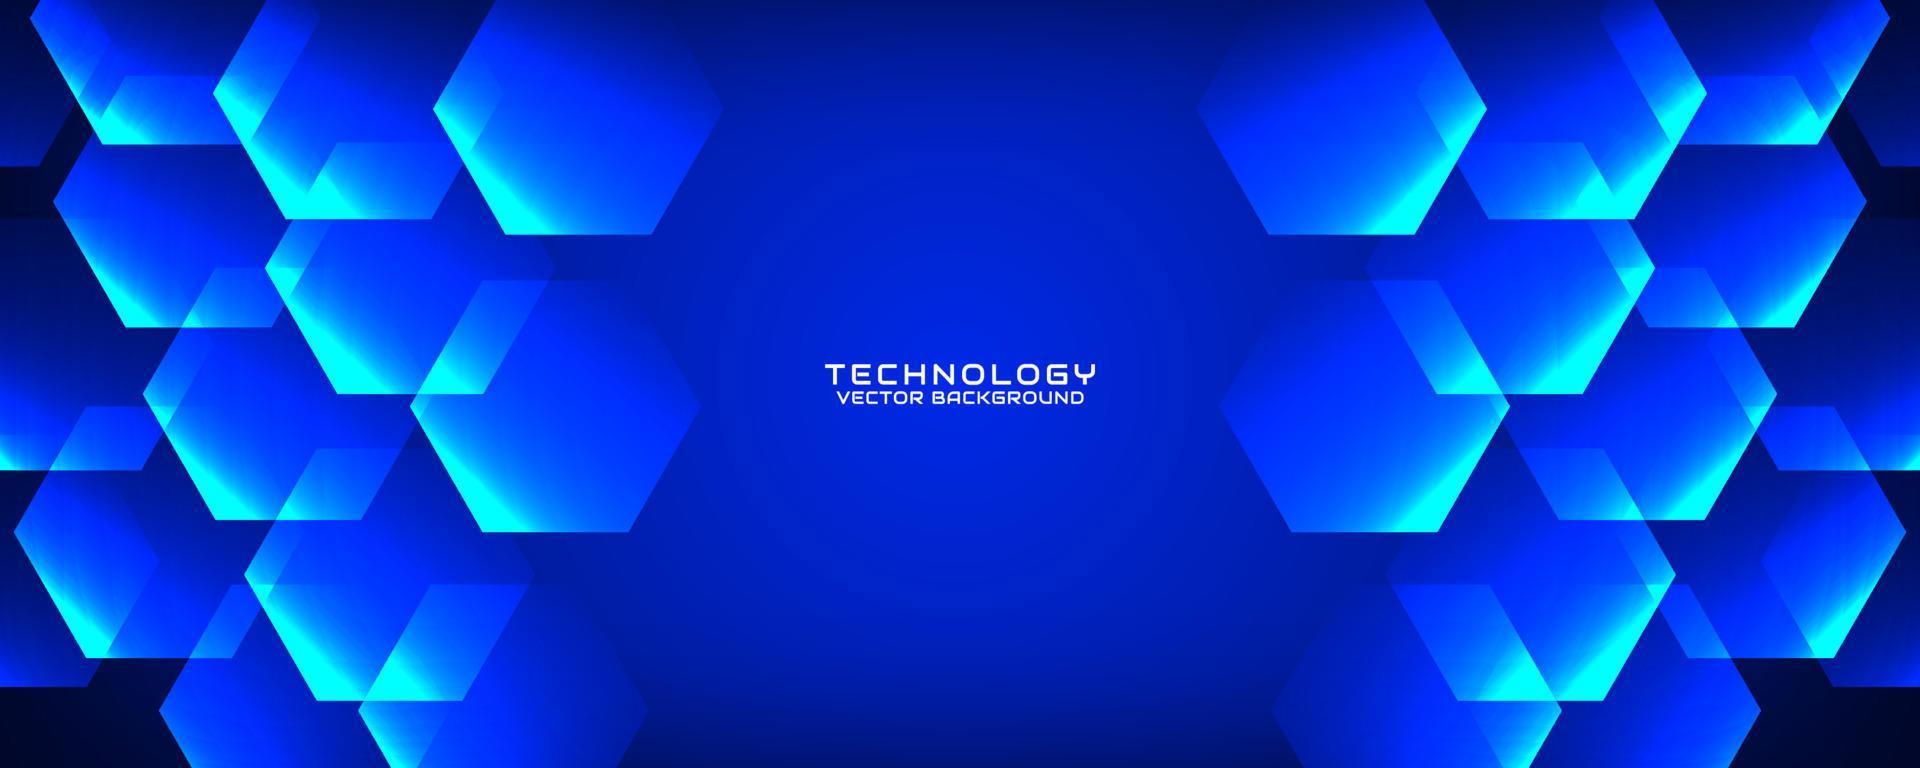 Capa de superposición de fondo abstracto de tecnología azul 3d en espacio oscuro con decoración de efecto de hexágonos. concepto de estilo de recorte de elemento de diseño gráfico para banner, volante, tarjeta, portada de folleto o página de inicio vector